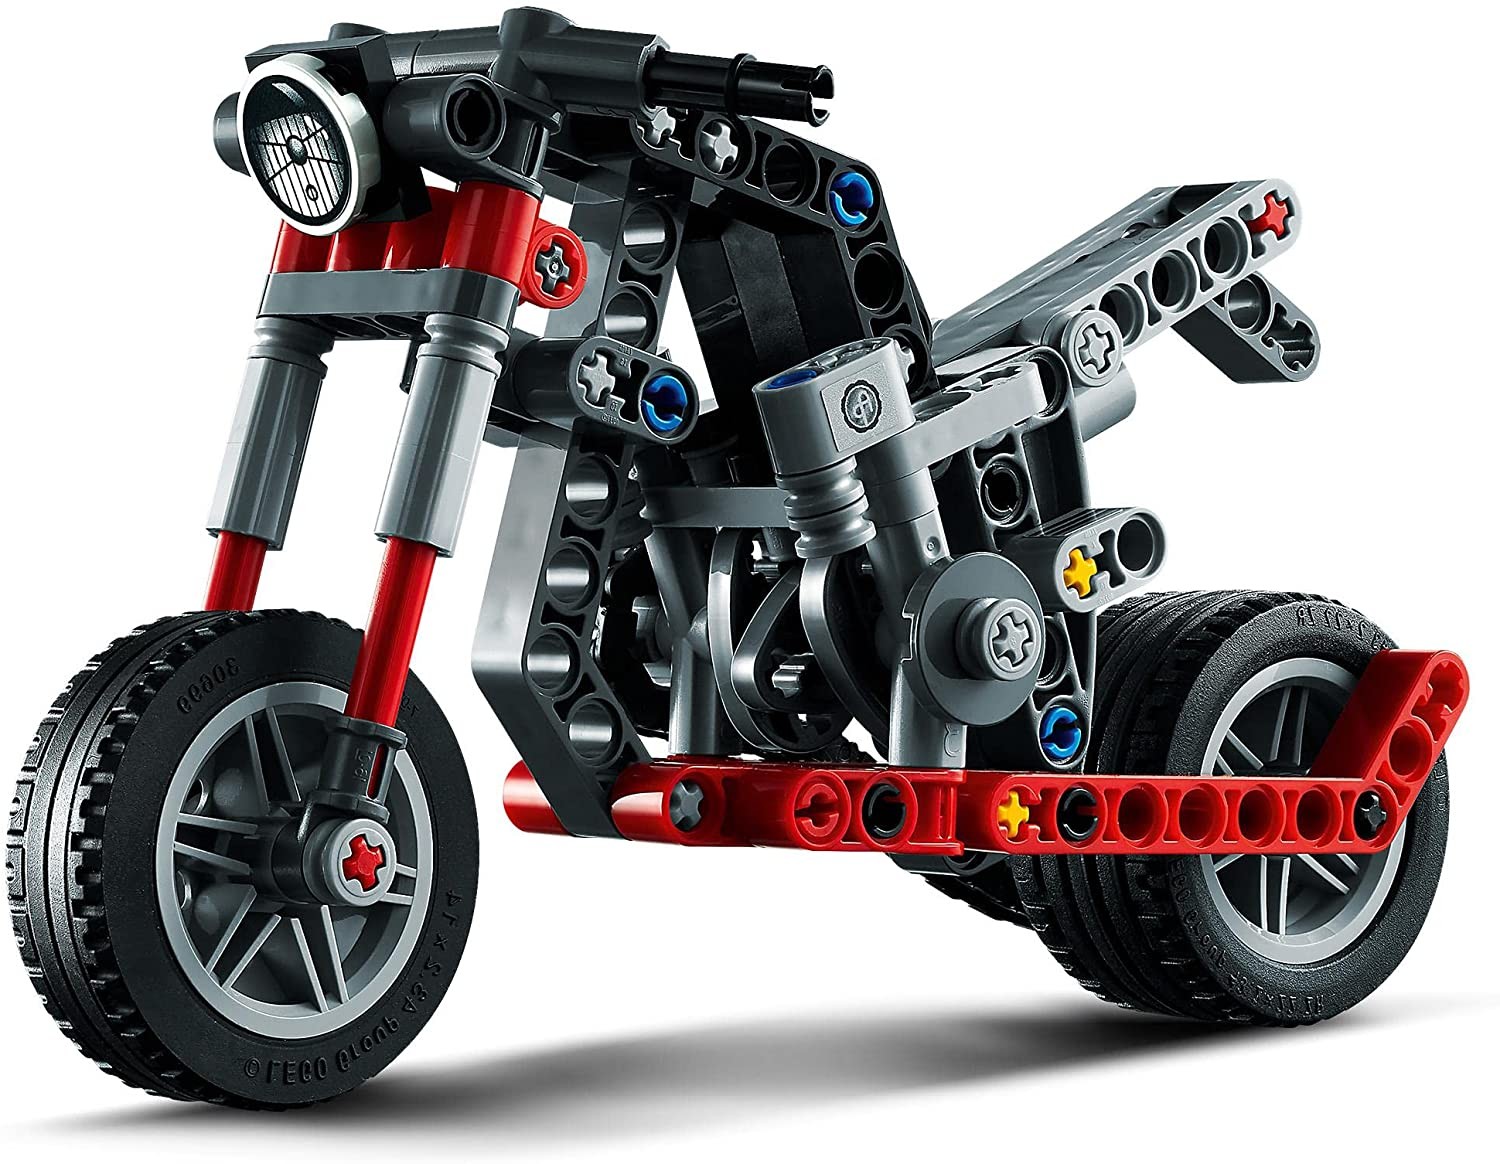 LEGO Technik 42132 - Chopper, Motorrad, 2-in-1 Bausatz, 163 Teile